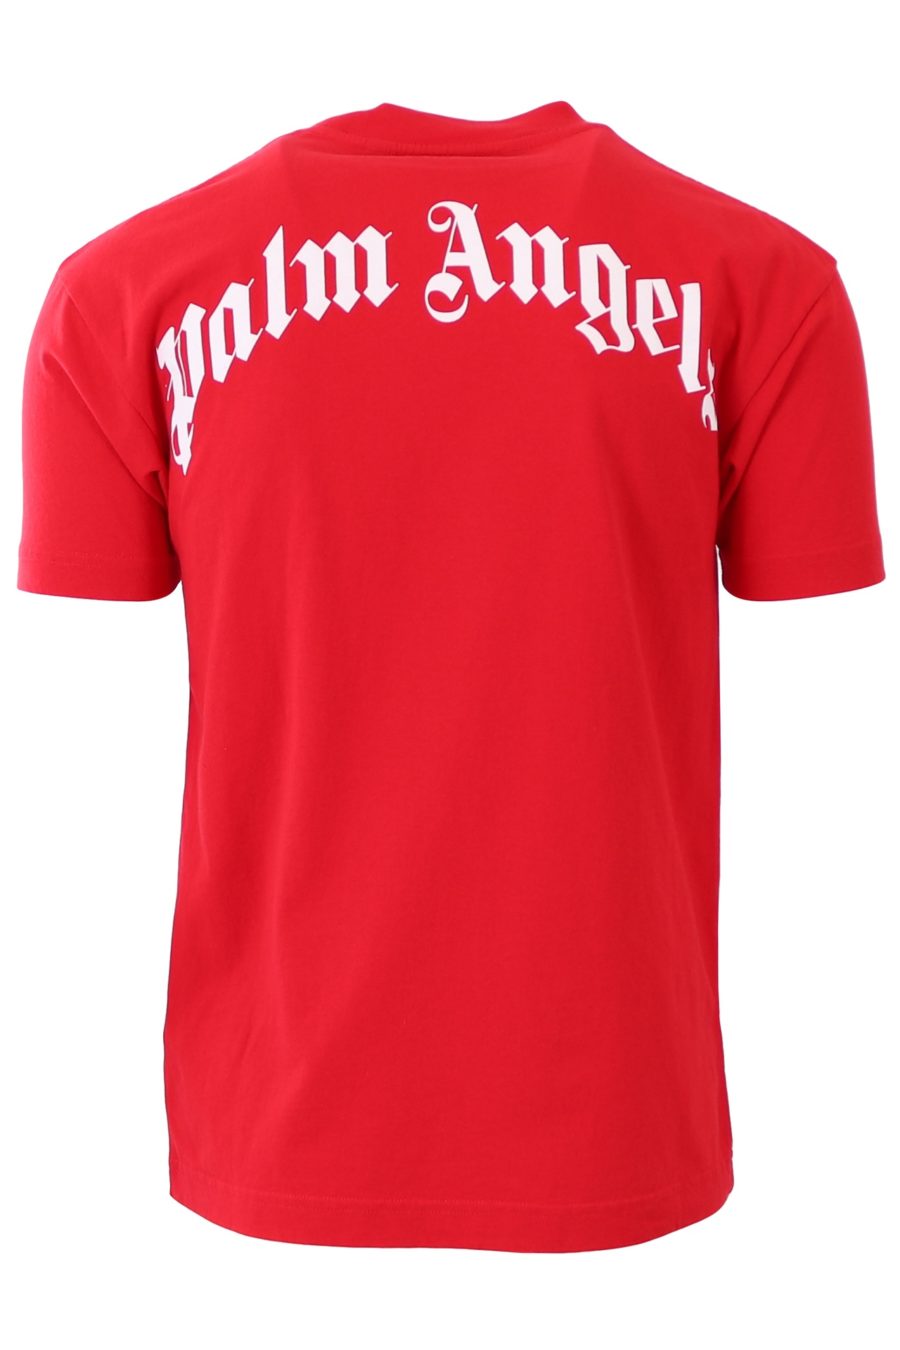 Camiseta Palm Angels roja con oso - 32e223a3748e678725c4a8c812146d994f138f03